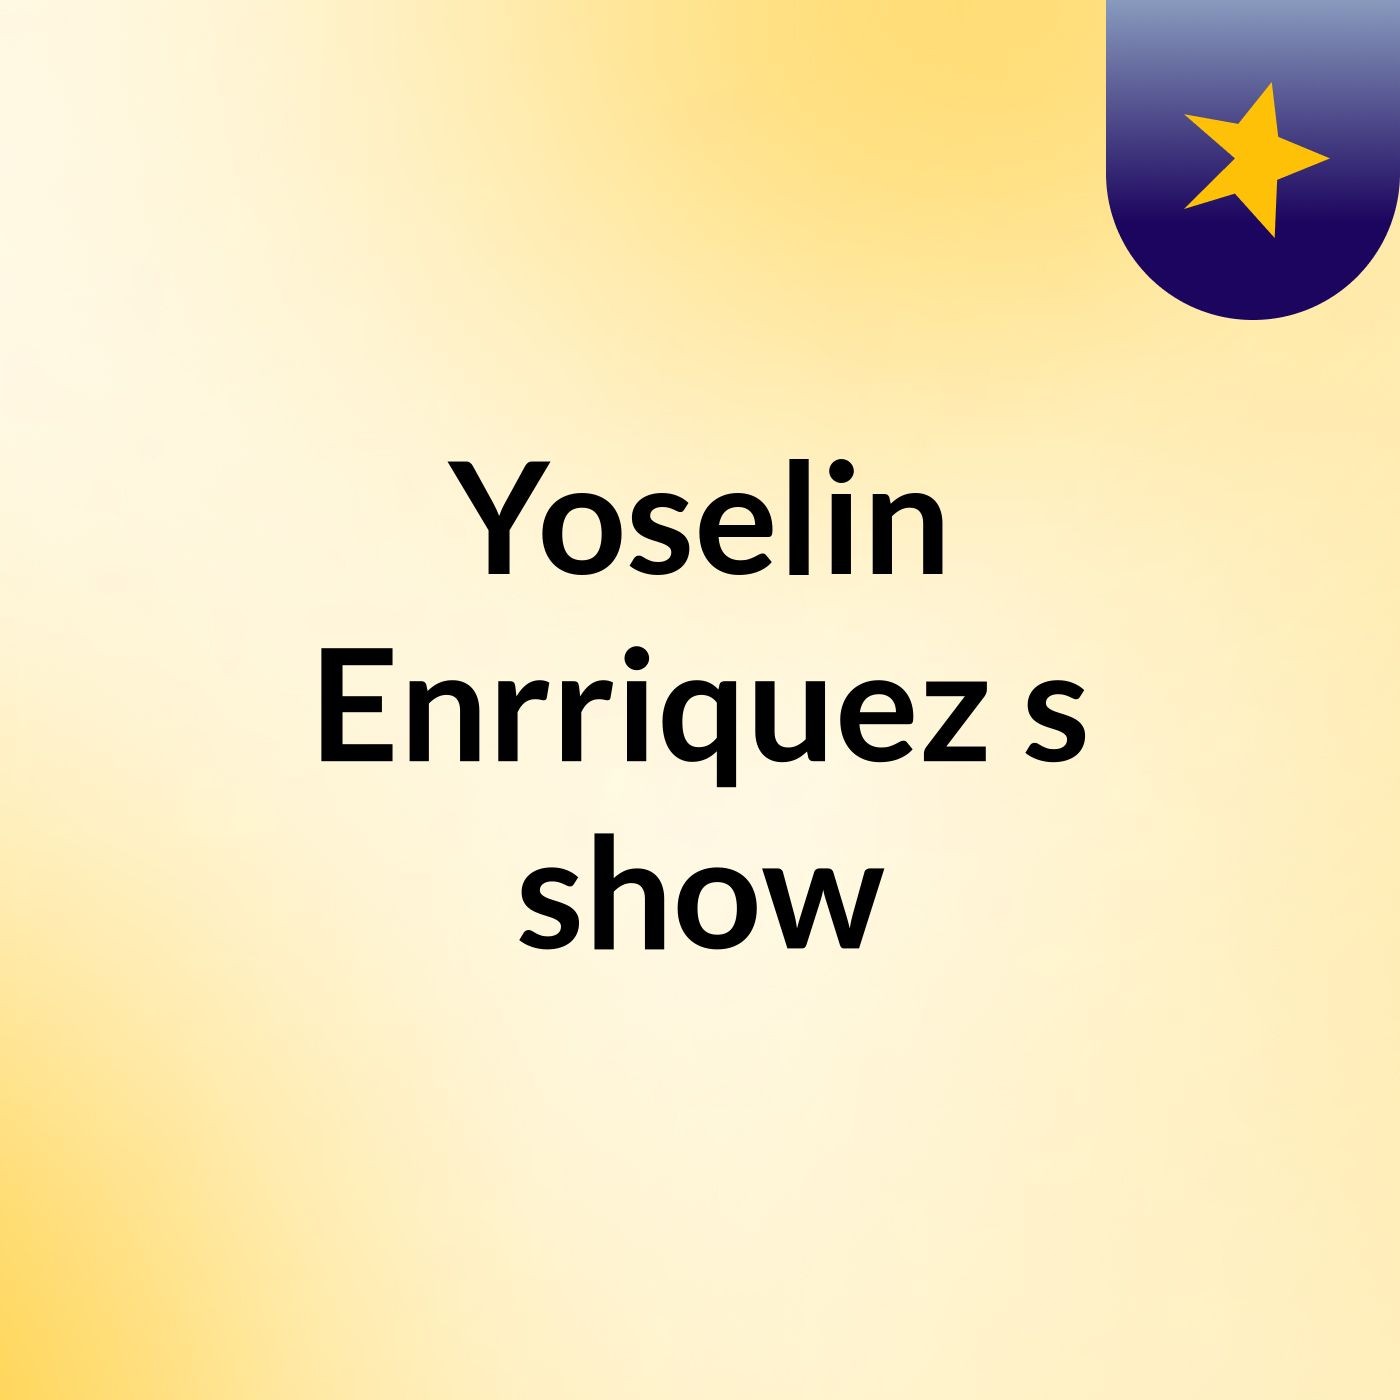 Yoselin Enrriquez's show